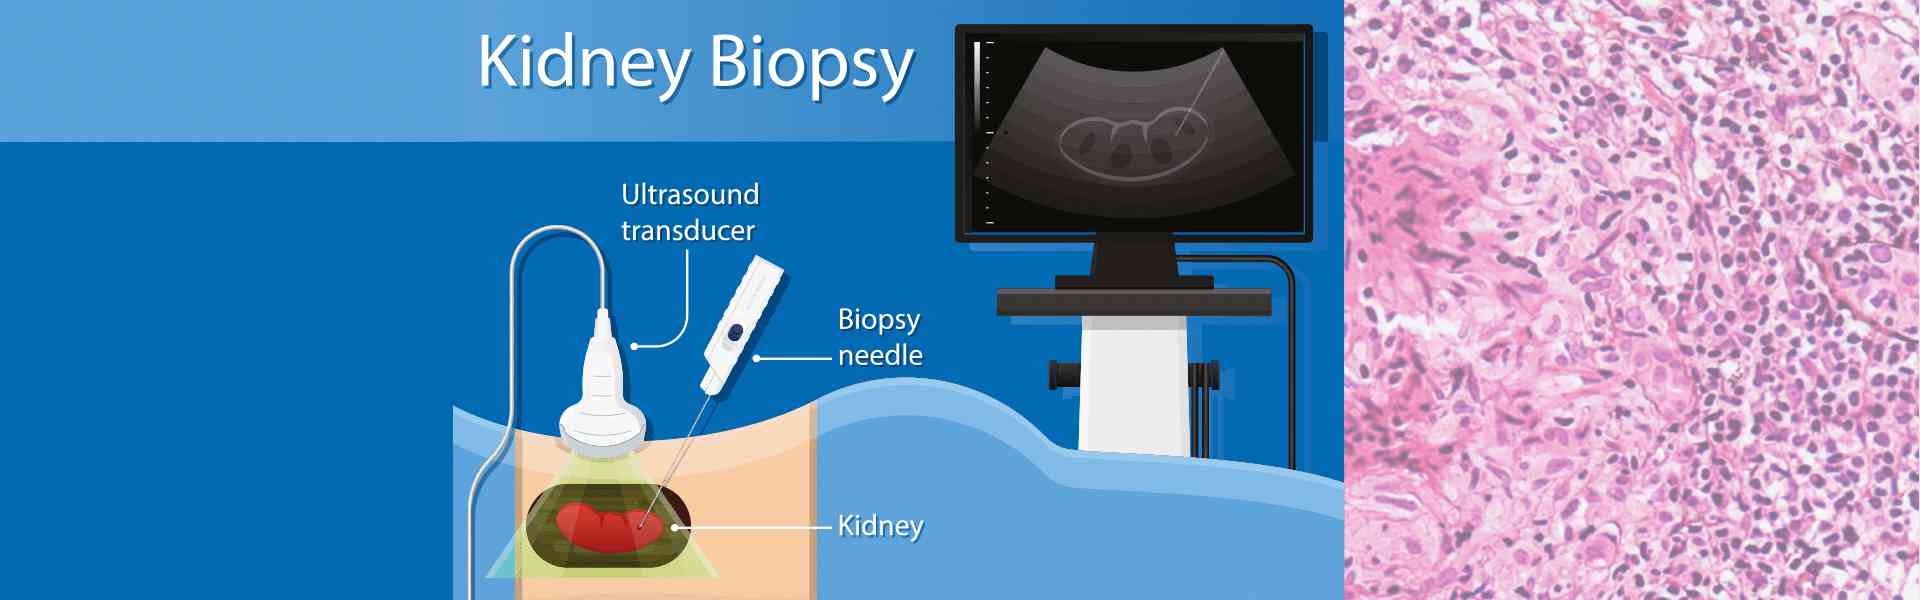 Kidney Biopsy Surgery in Dwarka 